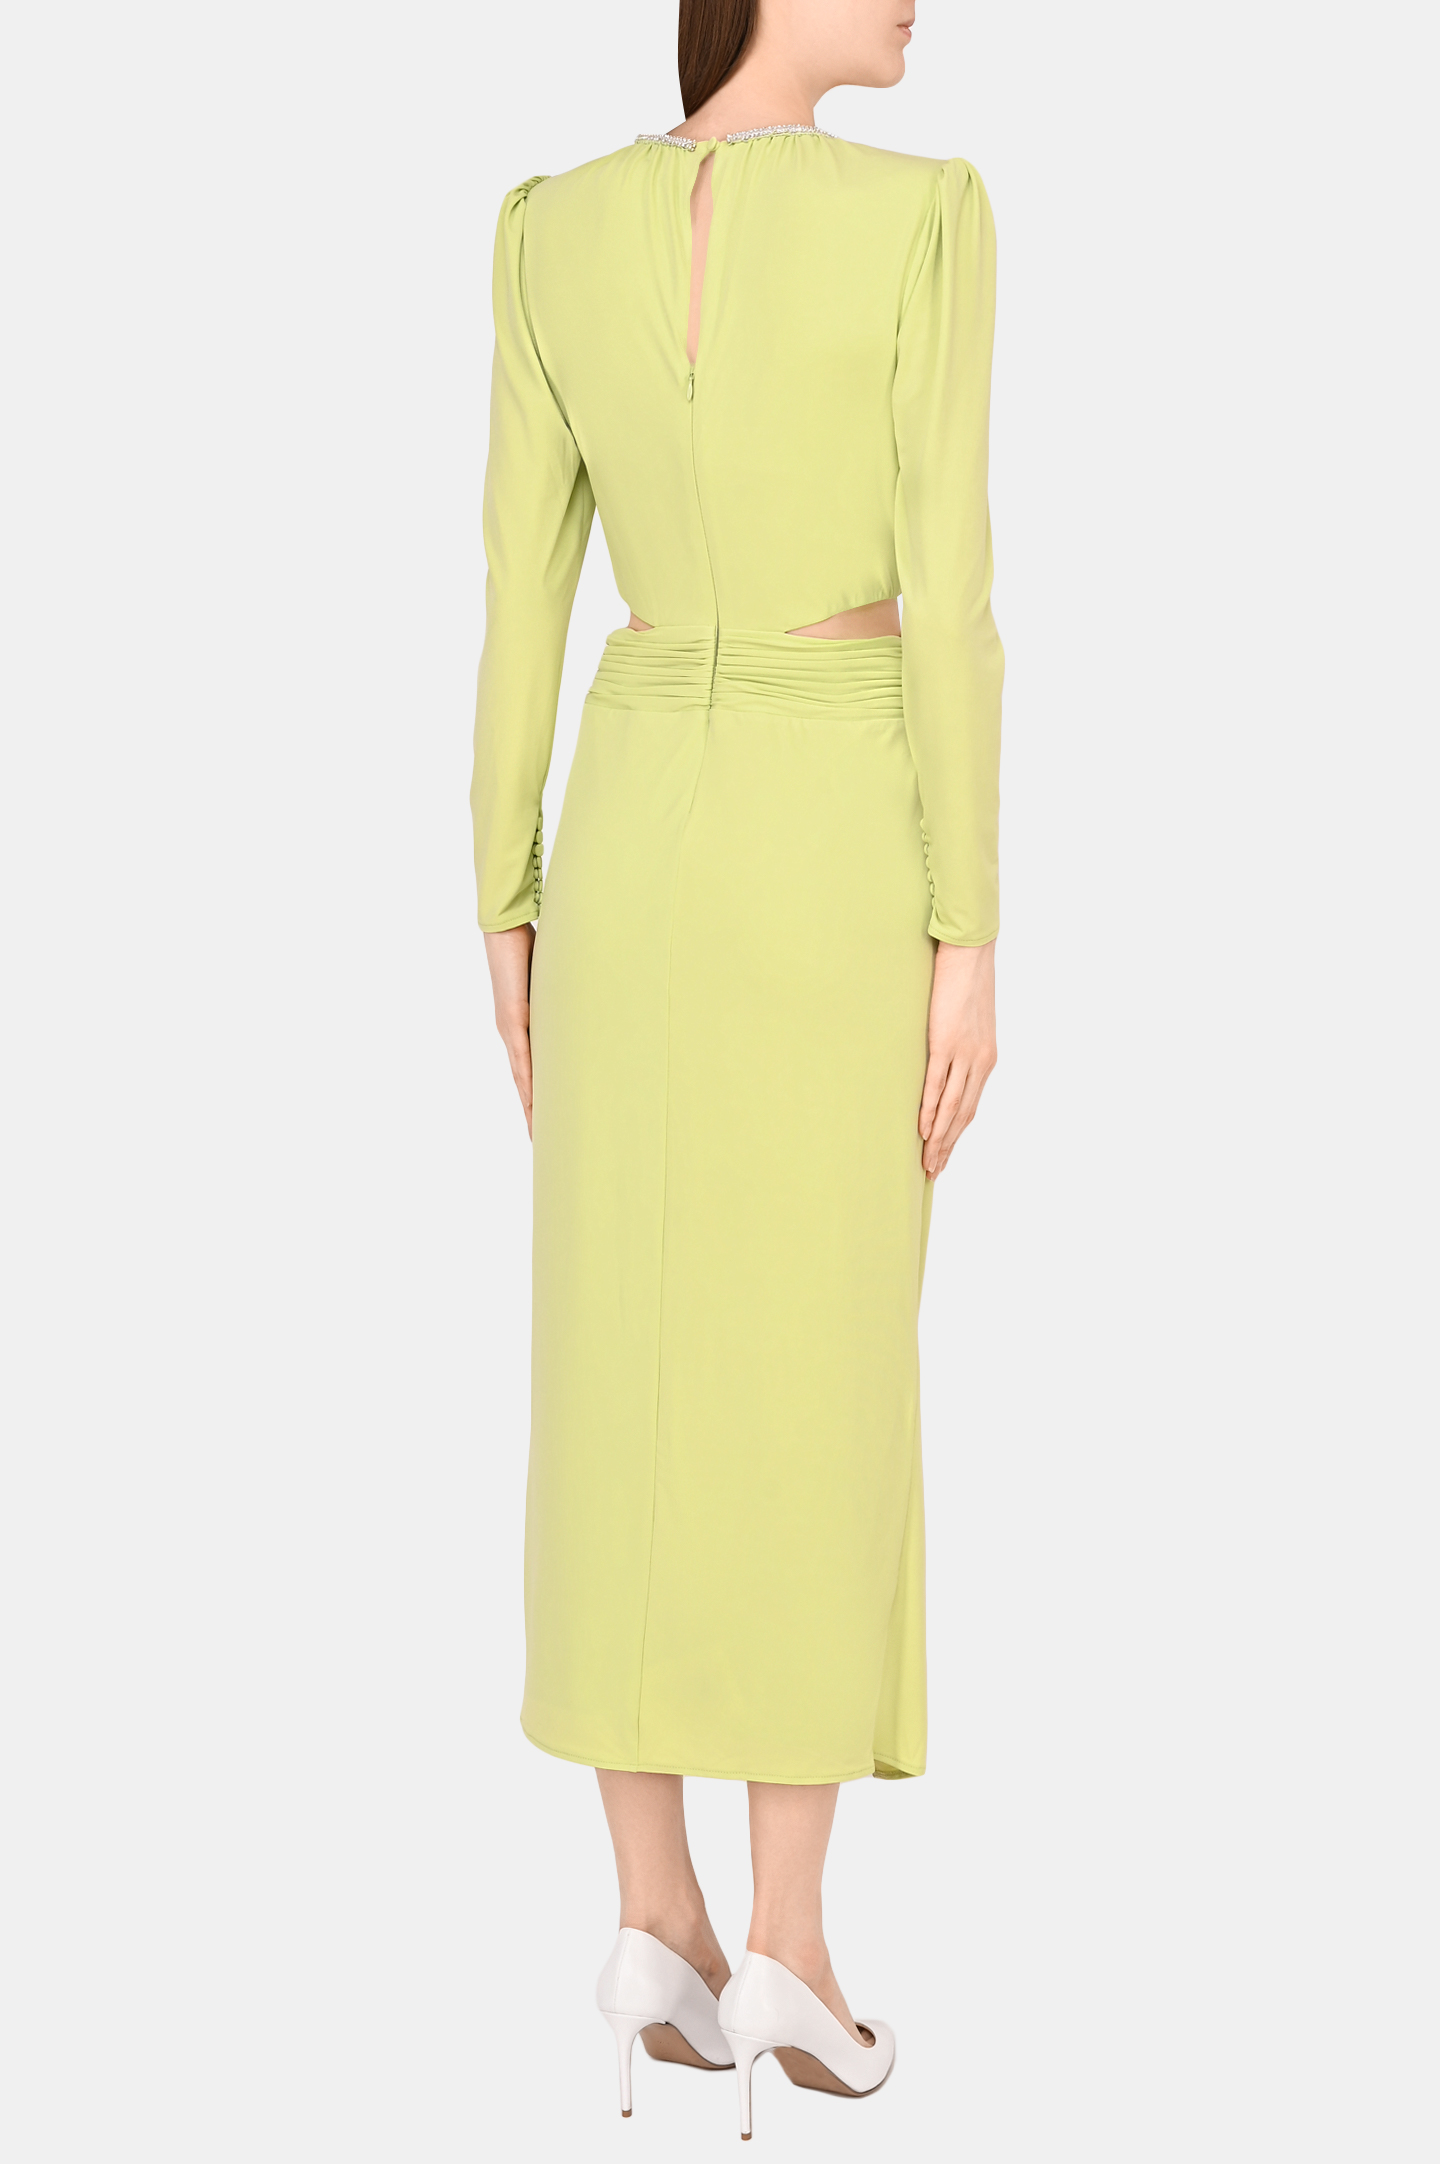 Платье SELF PORTRAIT RS22-043, цвет: Зеленый, Женский